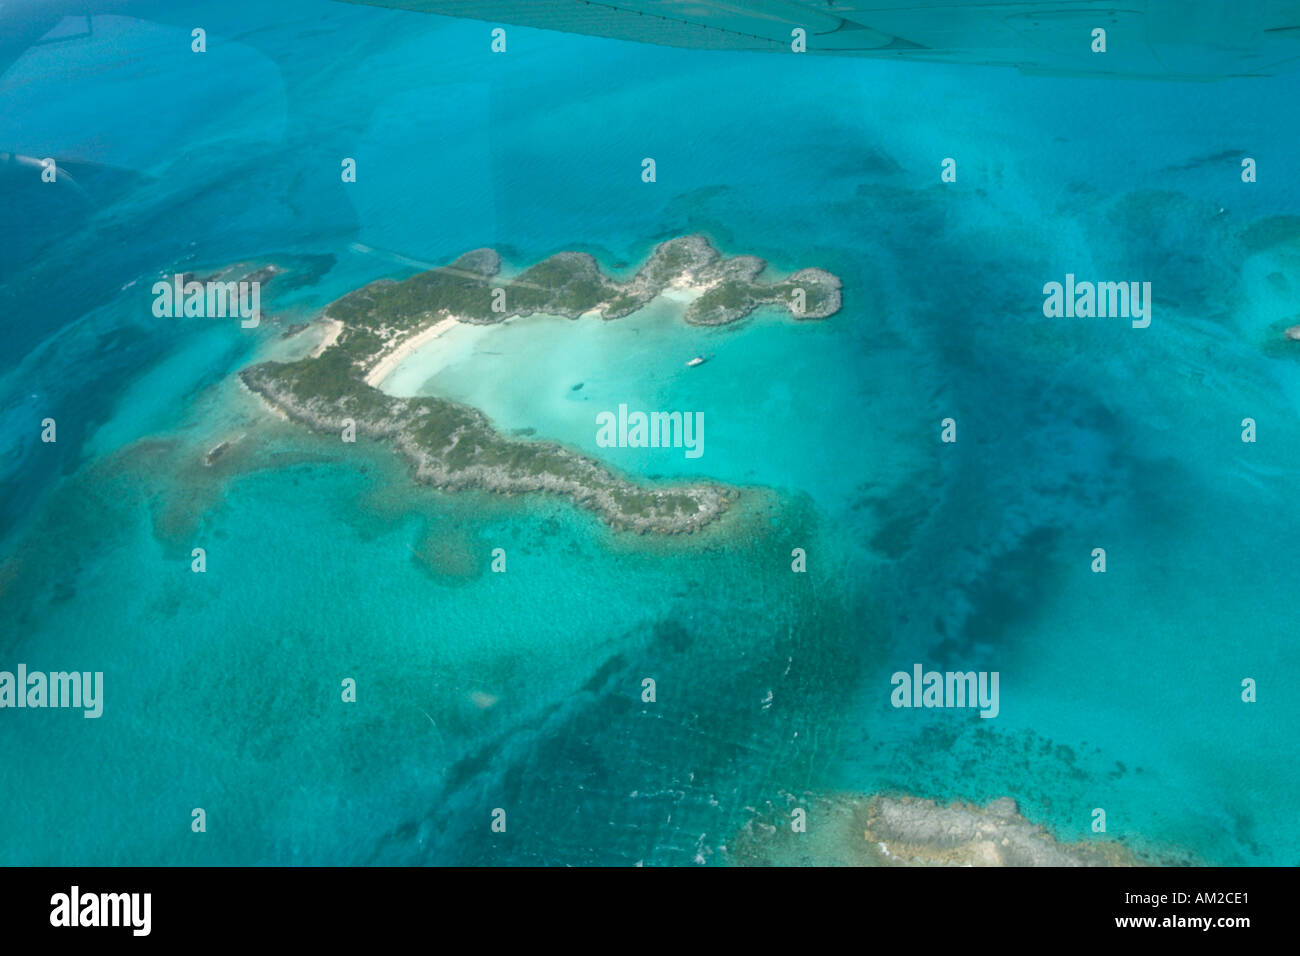 Vue aérienne de la partie nord à partir d'un avion privé, Exuma, Bahamas, Caraïbes Banque D'Images